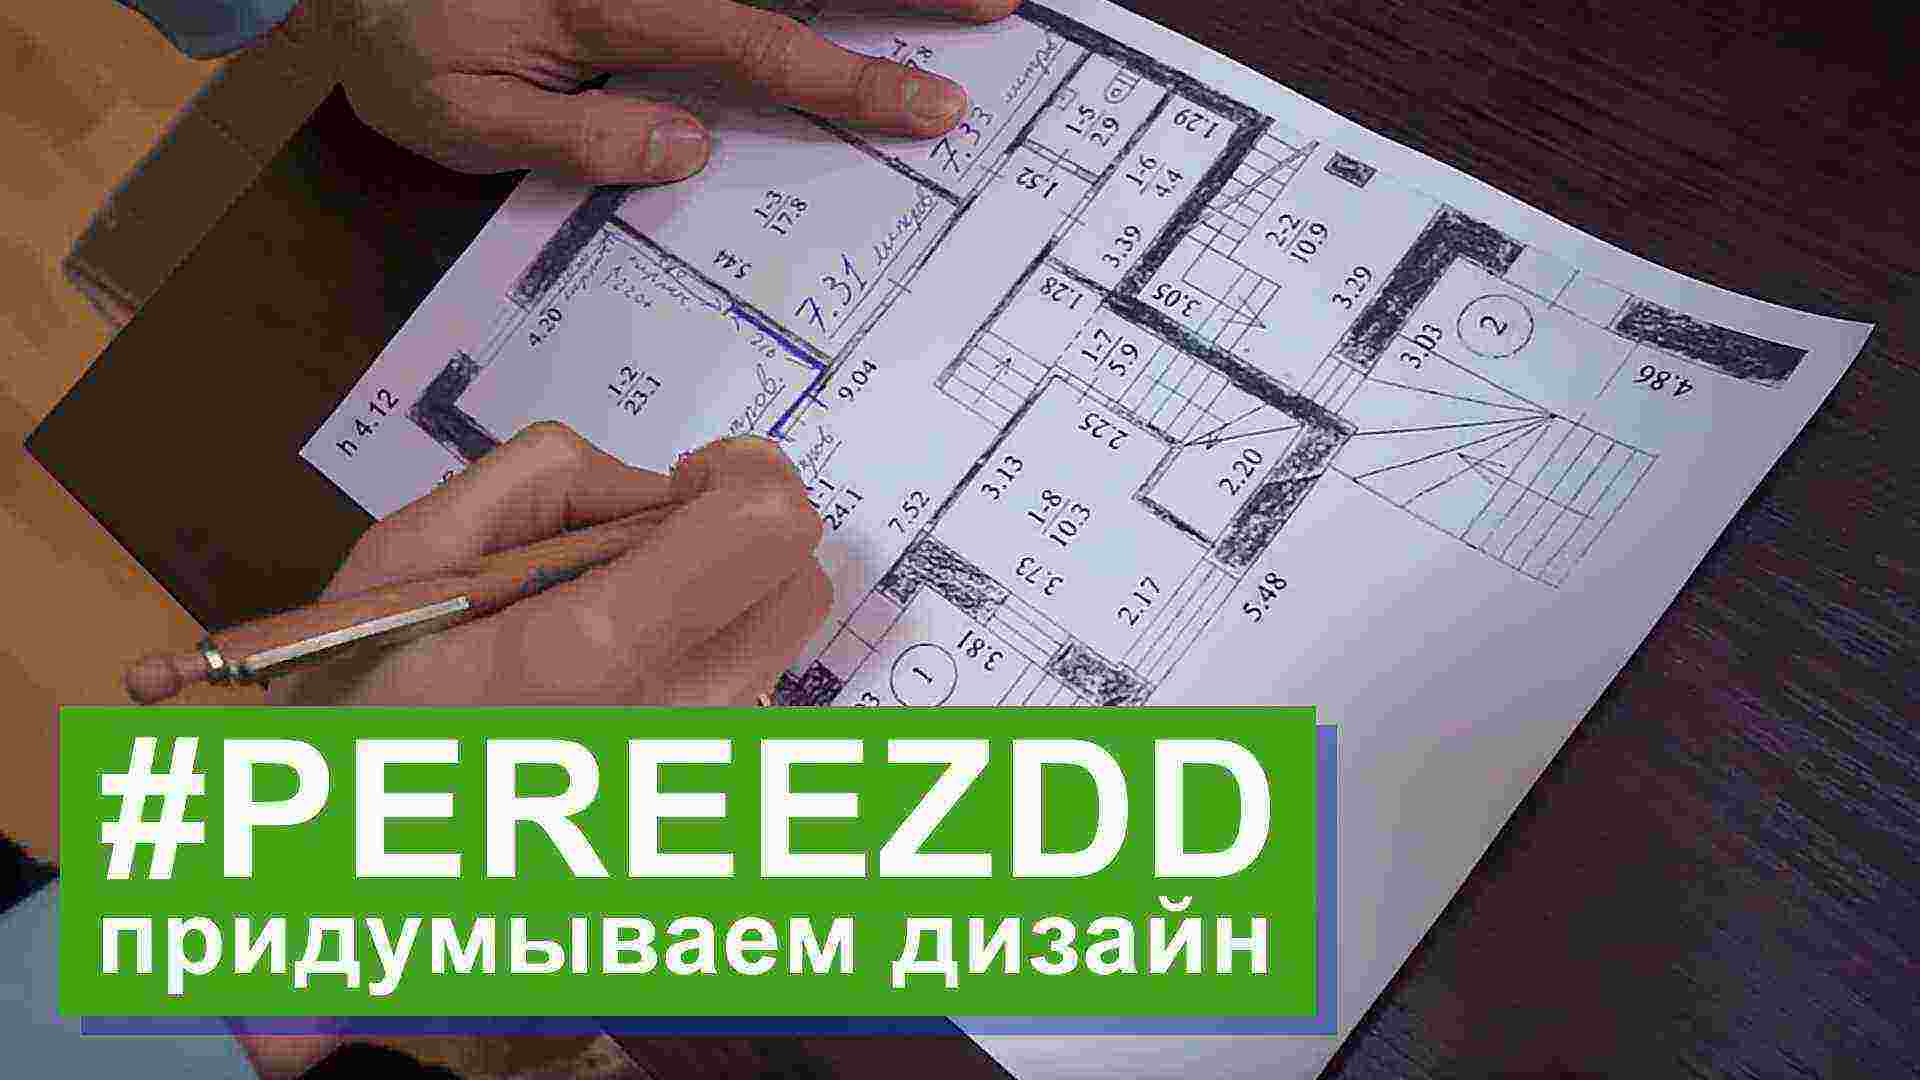 Наш #pereezdd – будущий дизайн и новая кухня